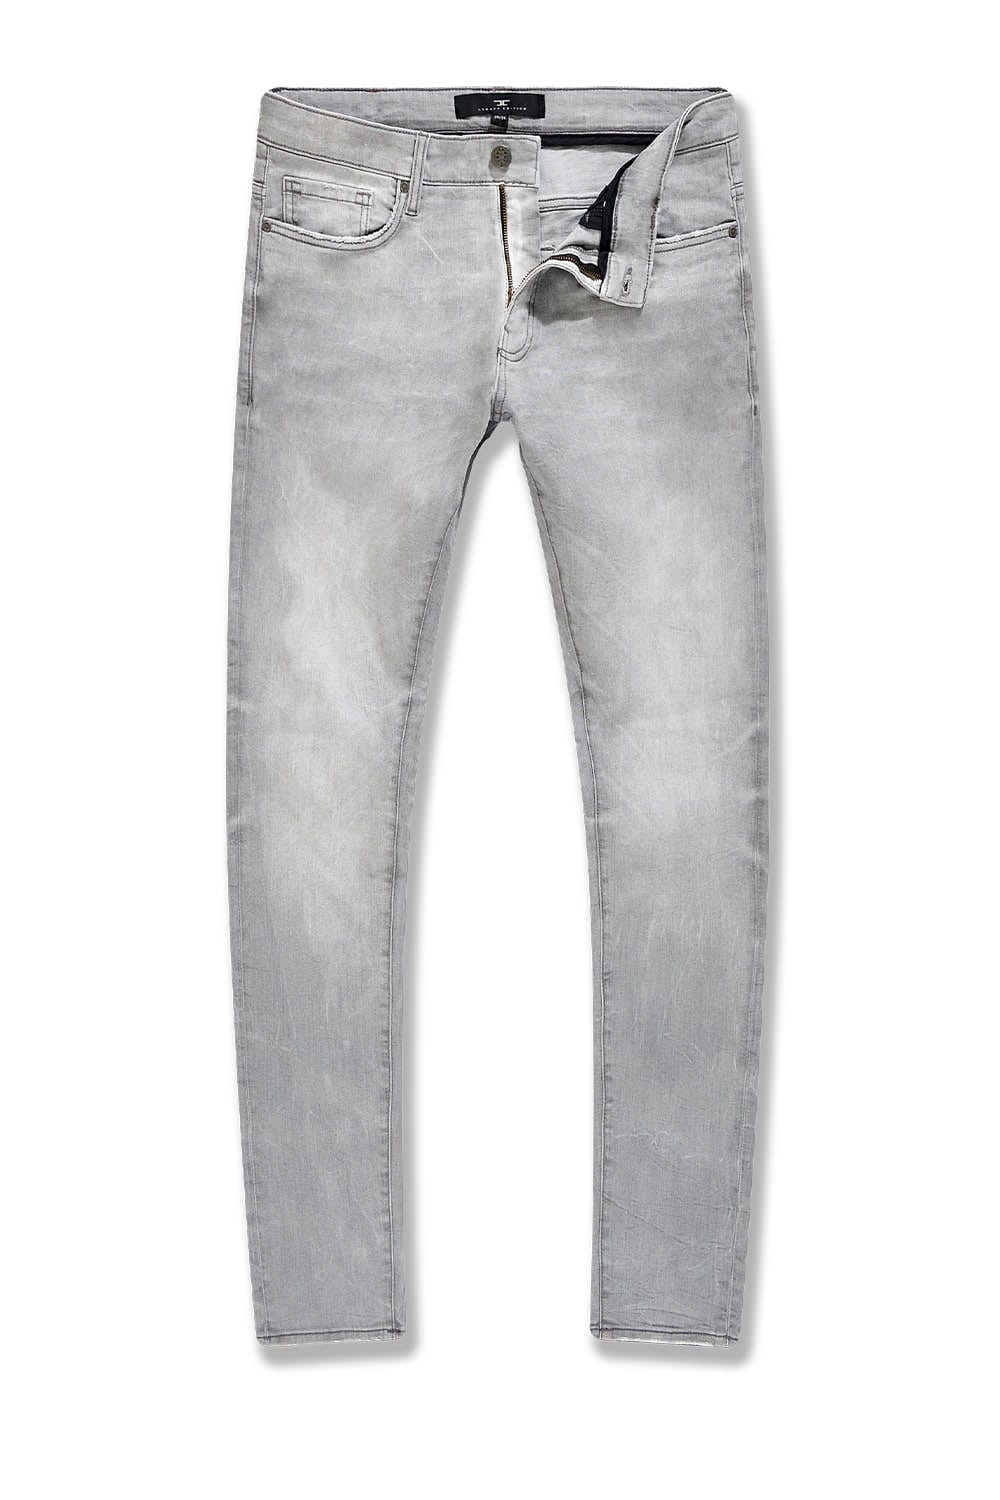 Jordan Craig Arctic Grey Skinny Fit Jeans